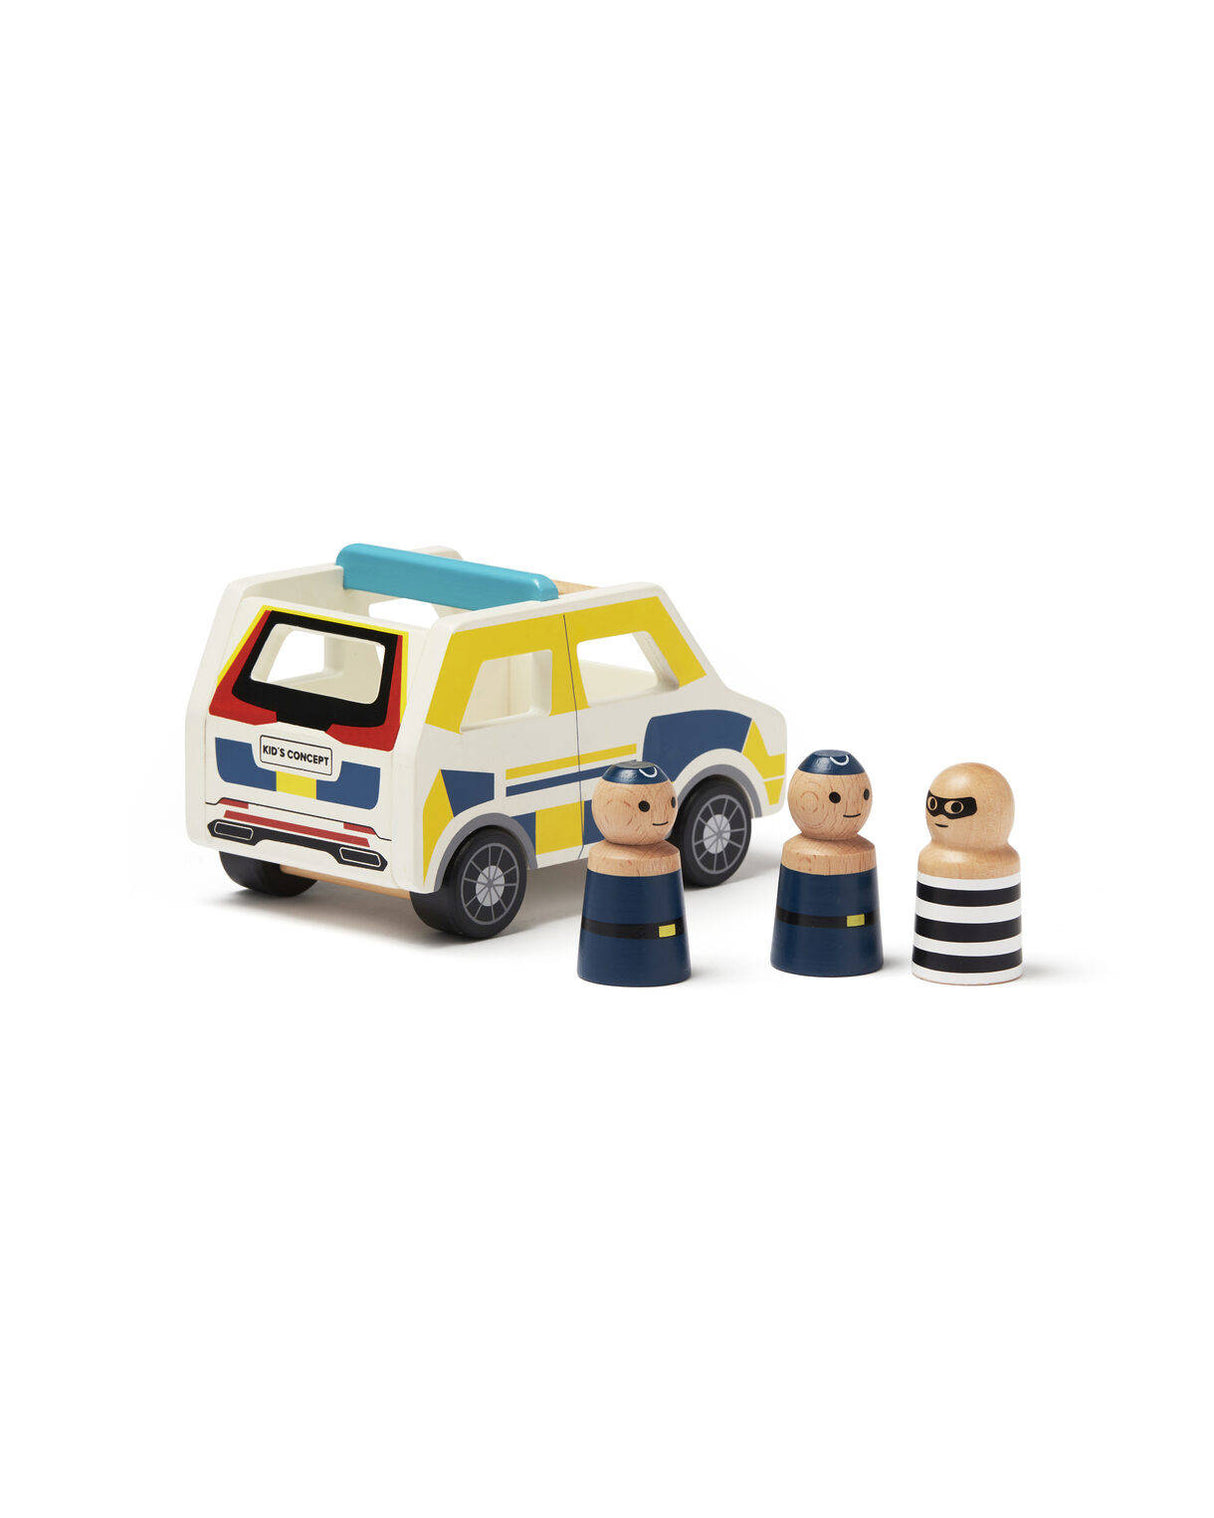 Drewniane auto policyjne Kid's Concept Aiden, solidny radiowóz z figurkami, pobudza wyobraźnię i zapewnia bezpieczną zabawę.